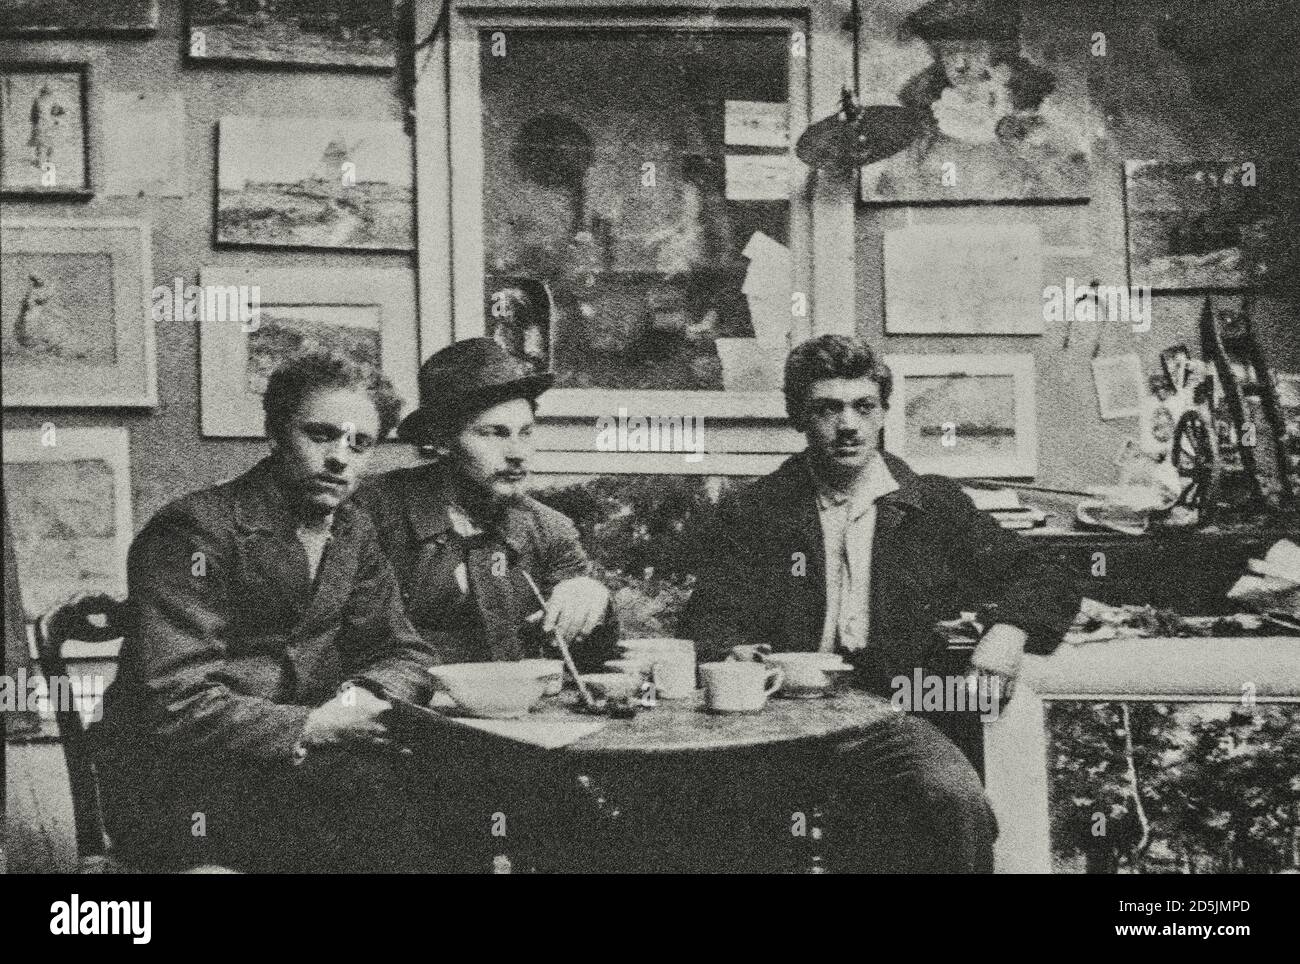 Foto retrò di Raoul Dufy (a sinistra) e Othon Friesz (a destra) nel loro studio. 1900 Raoul Dufy (1953 – 1877) è stato un pittore francese Fauvista, fratello di Jean Foto Stock